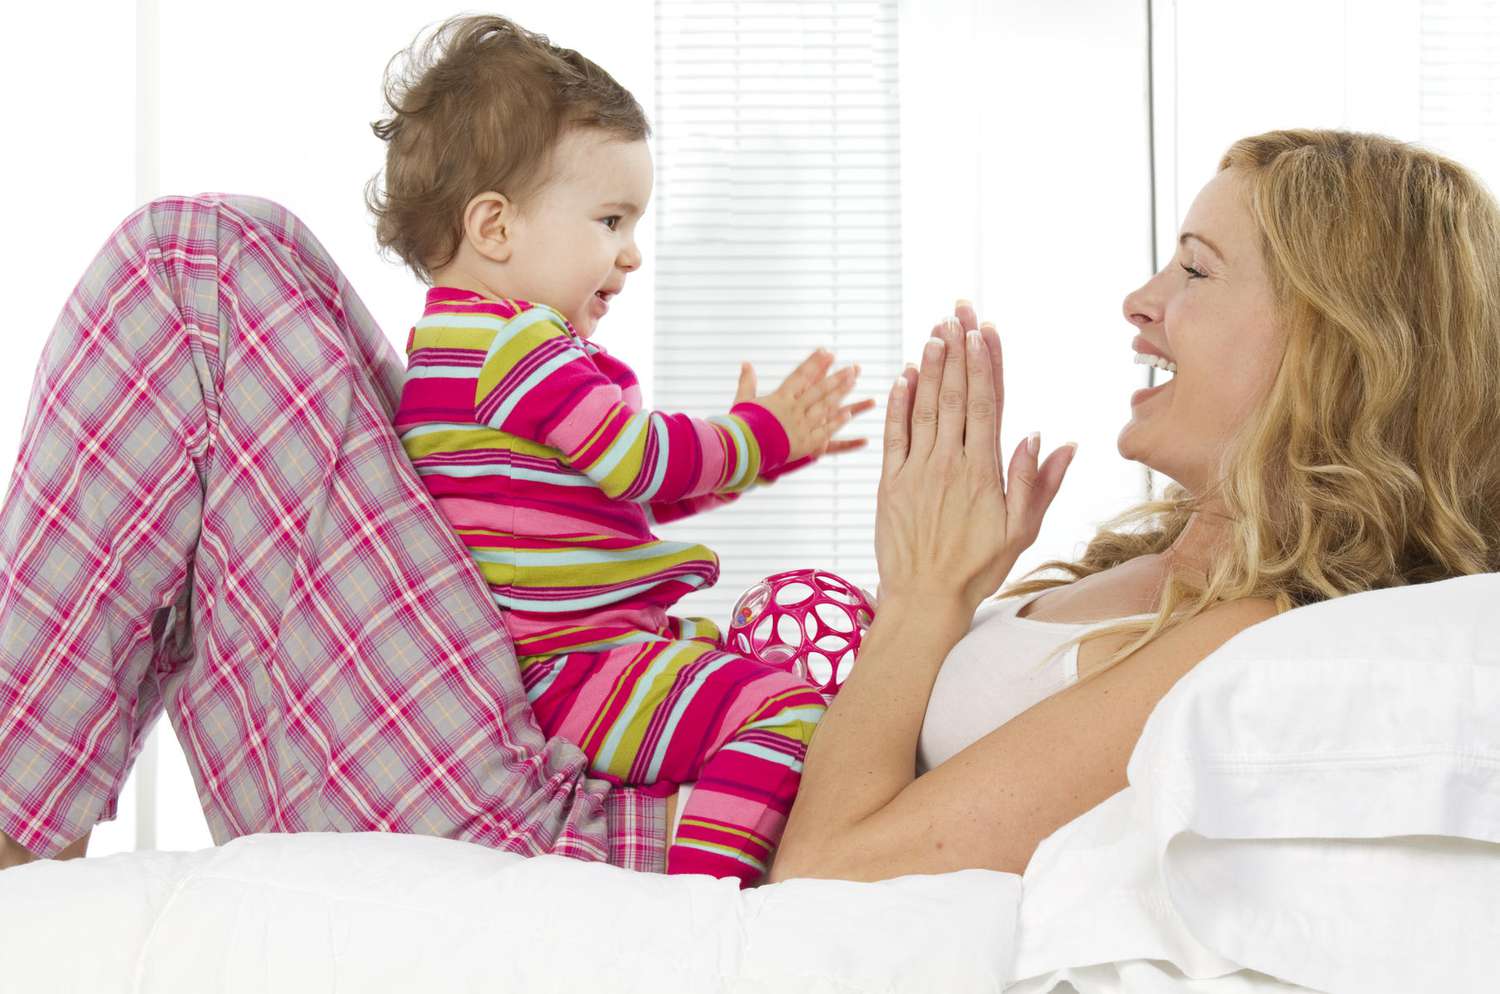 Mức độ nhạy cảm trong tương tác của người mẹ là một thước đo cho khả năng bắt chước của đứa trẻ. Ảnh: Parents